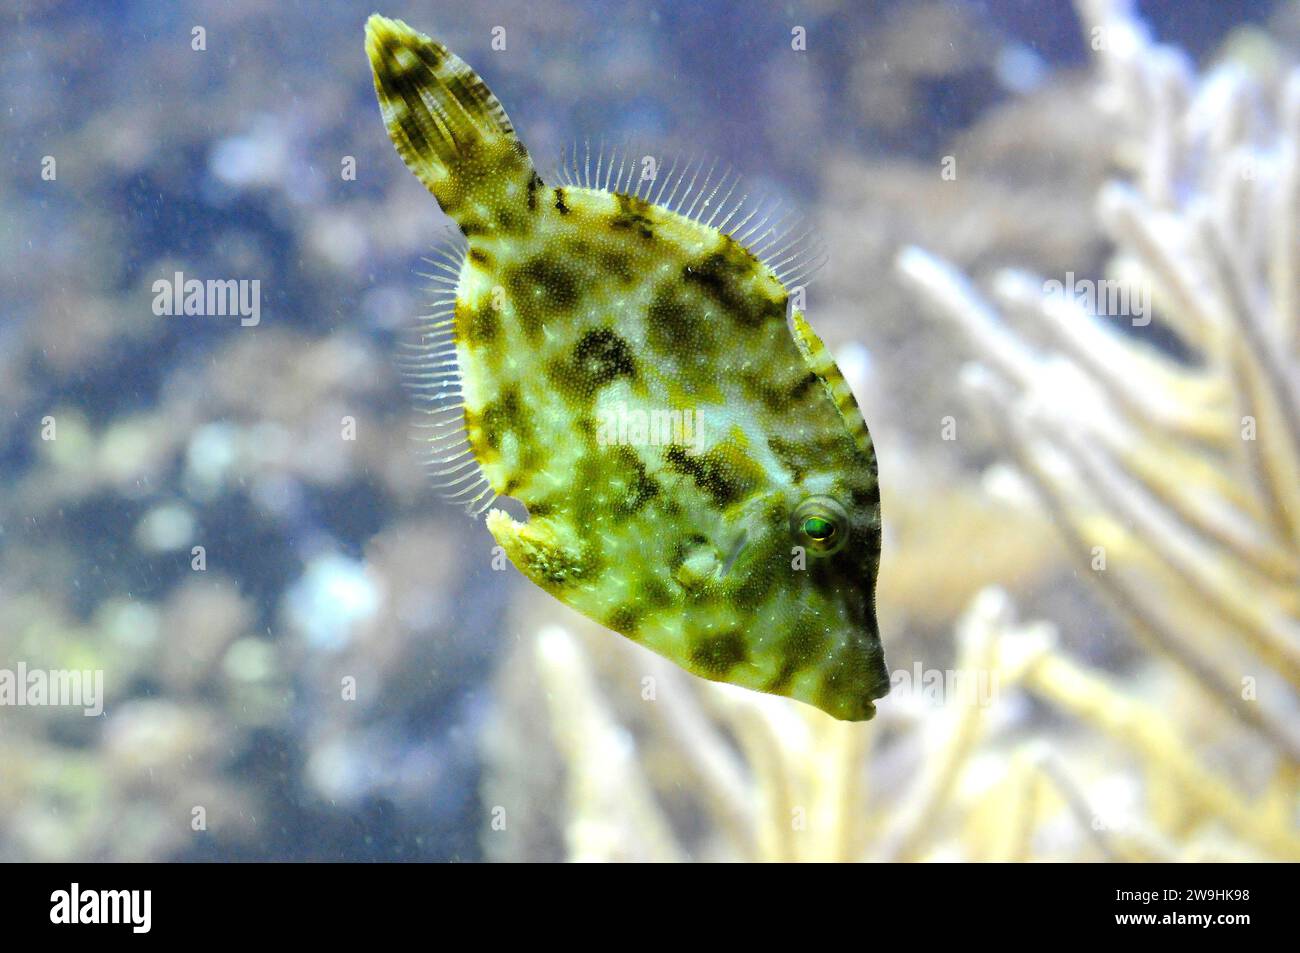 Le corégone à queue de poil (Acreichthys tomentosus) est un poisson marin tropical originaire de l'océan Indo-Pacifique. Banque D'Images